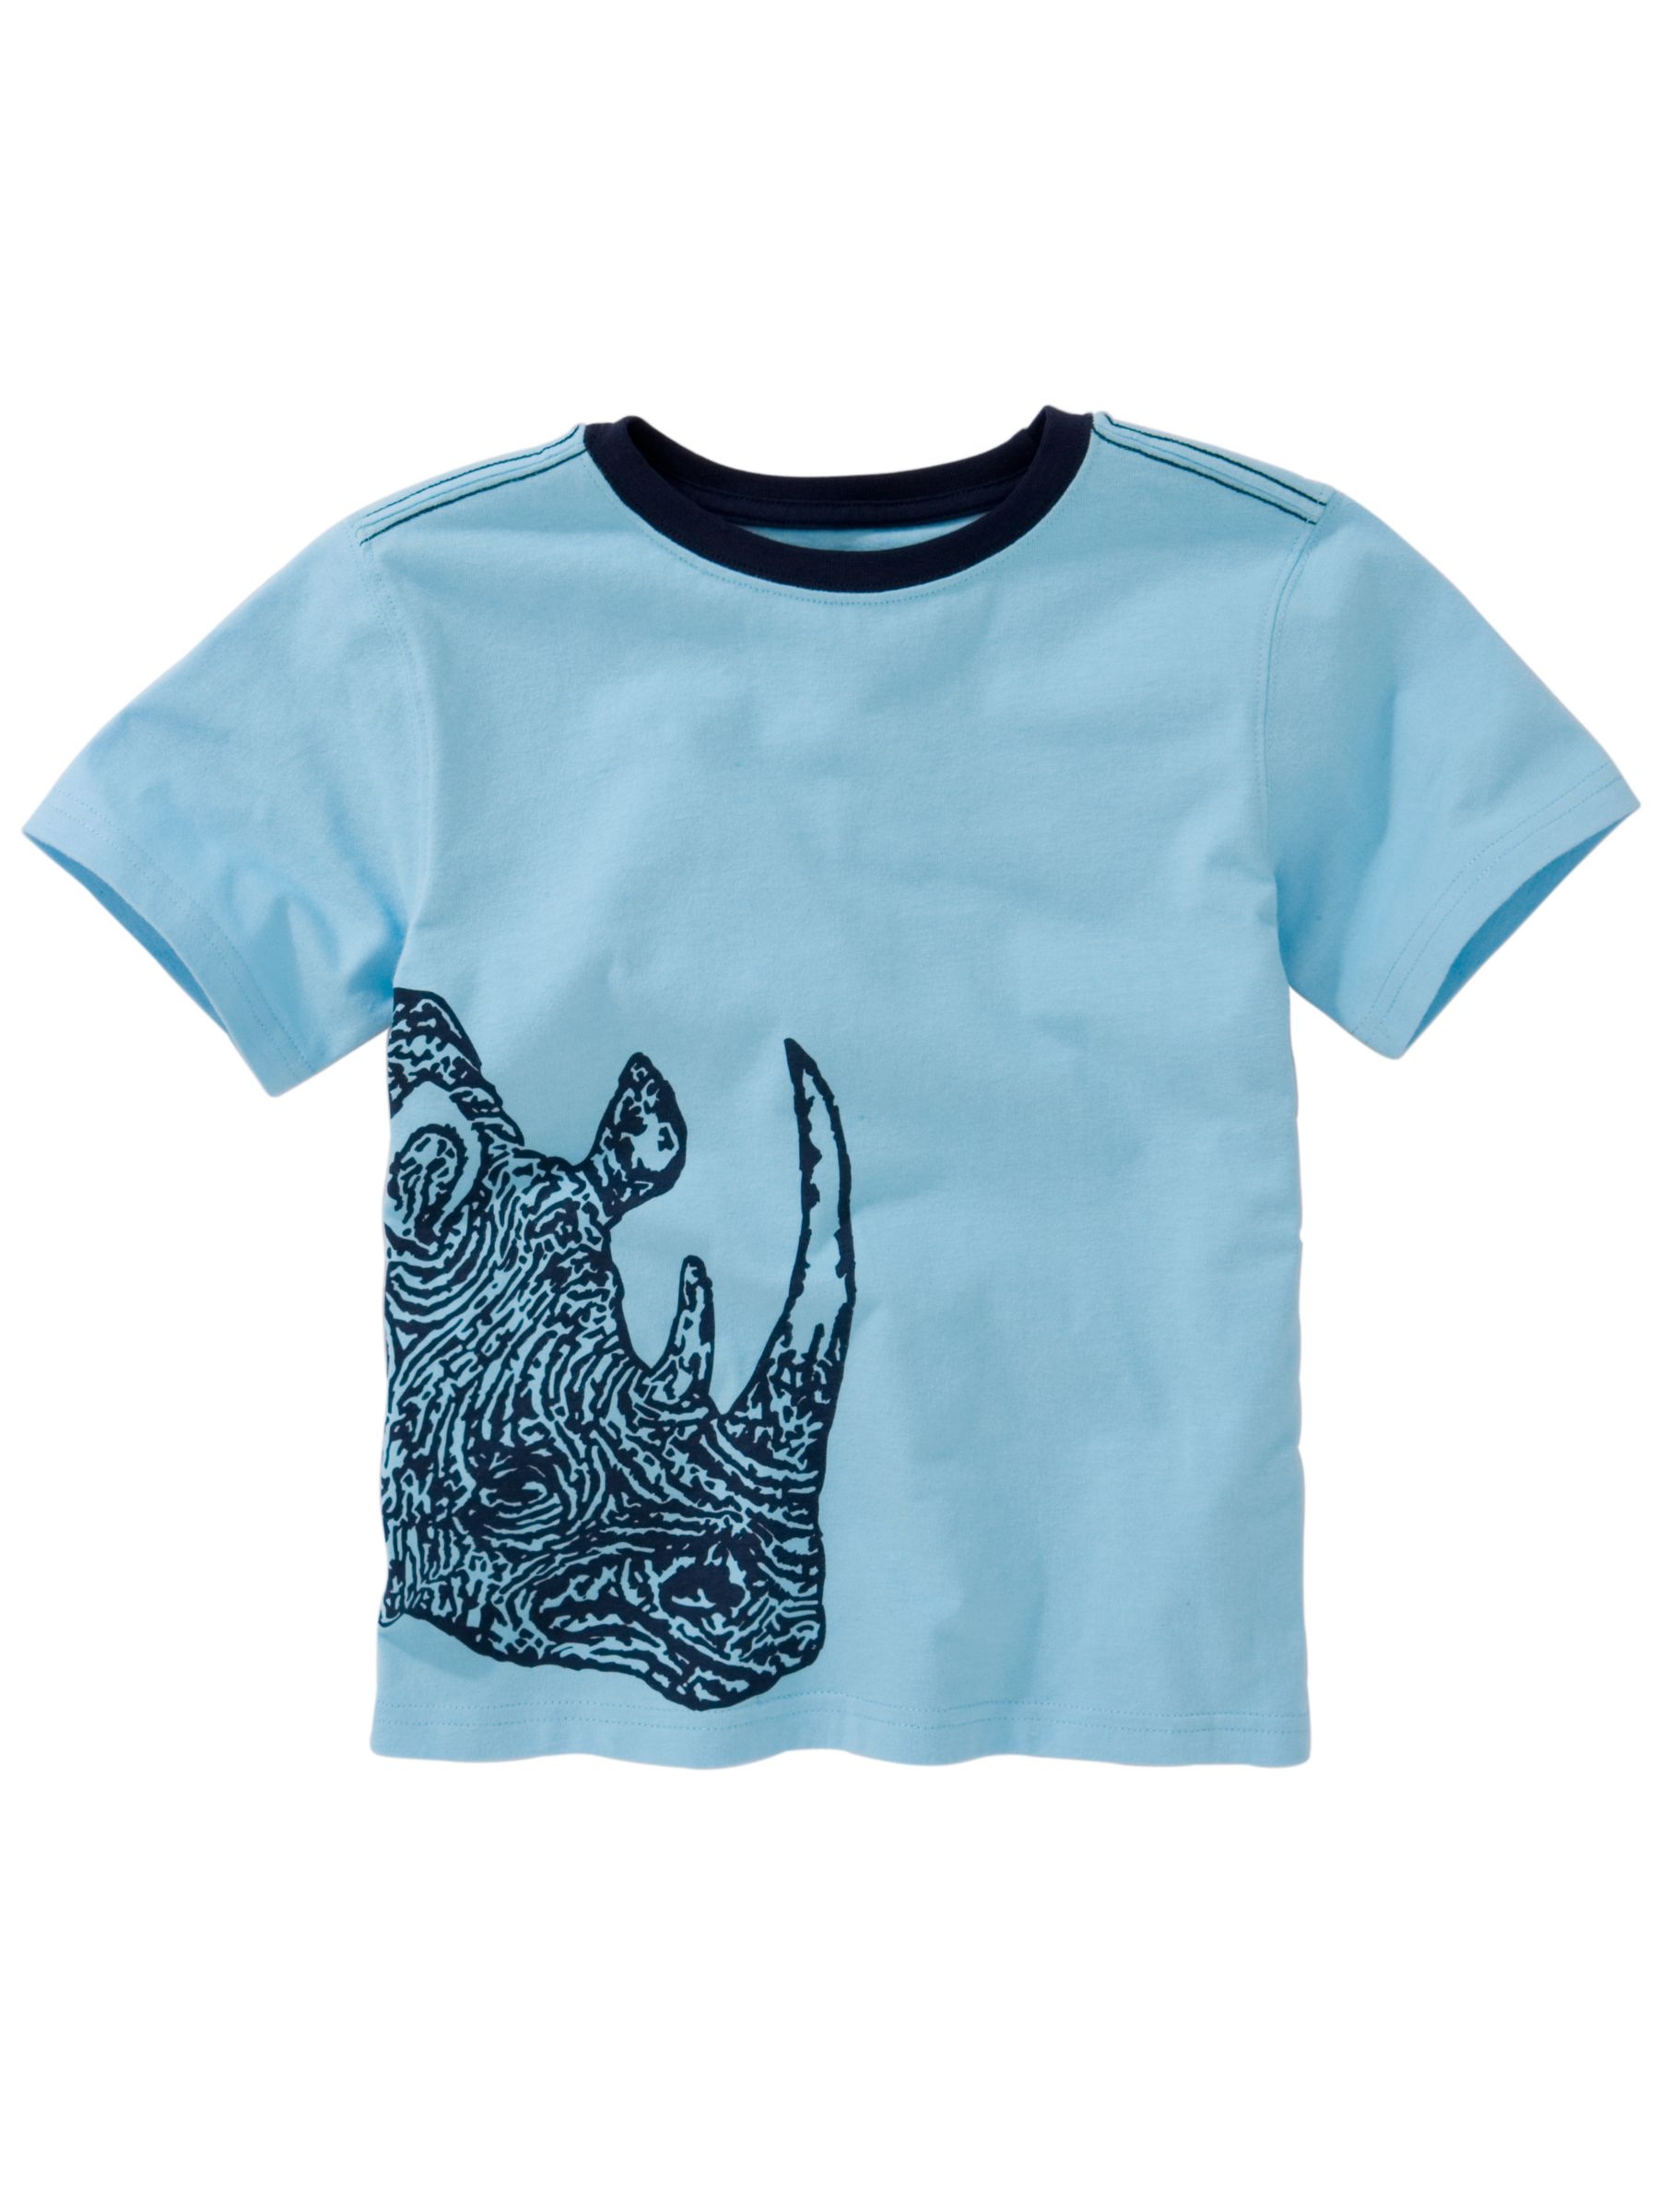 s Rhino Graphic T-Shirt, Blue